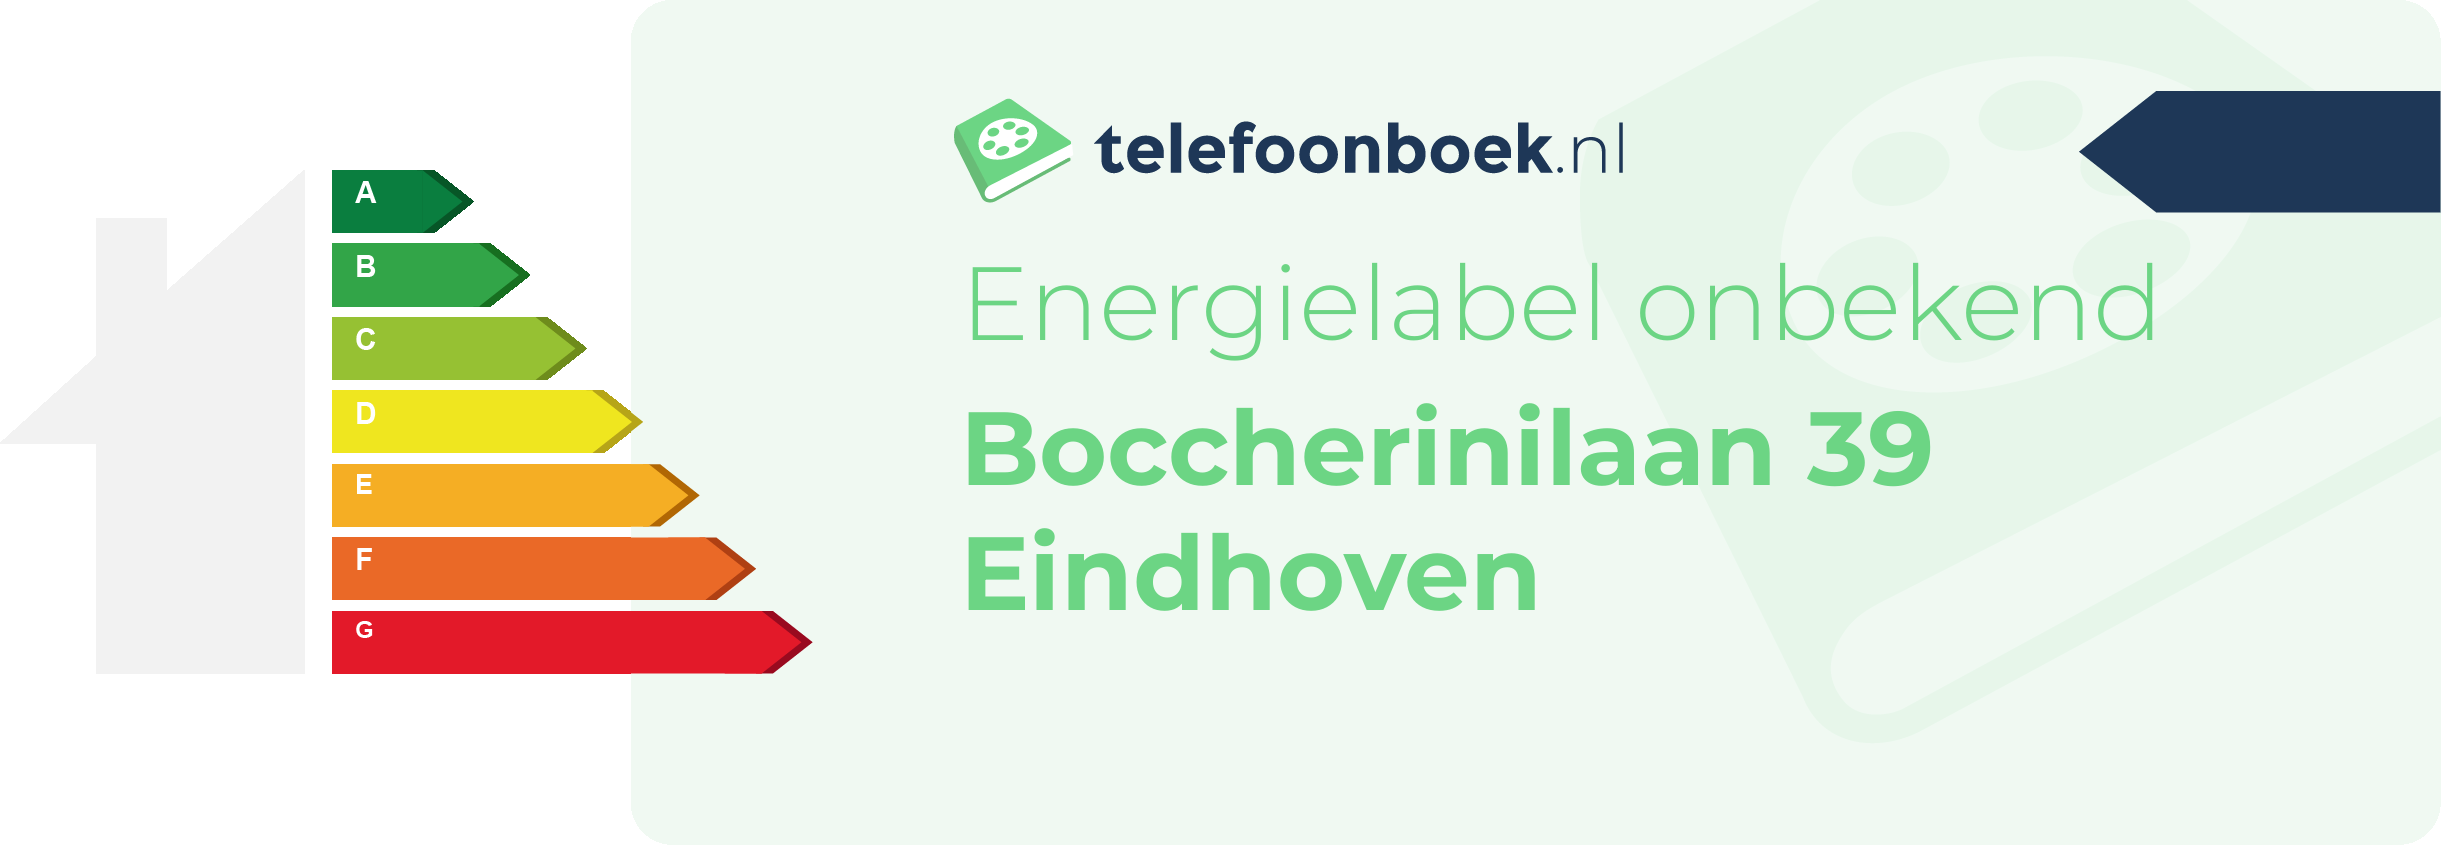 Energielabel Boccherinilaan 39 Eindhoven